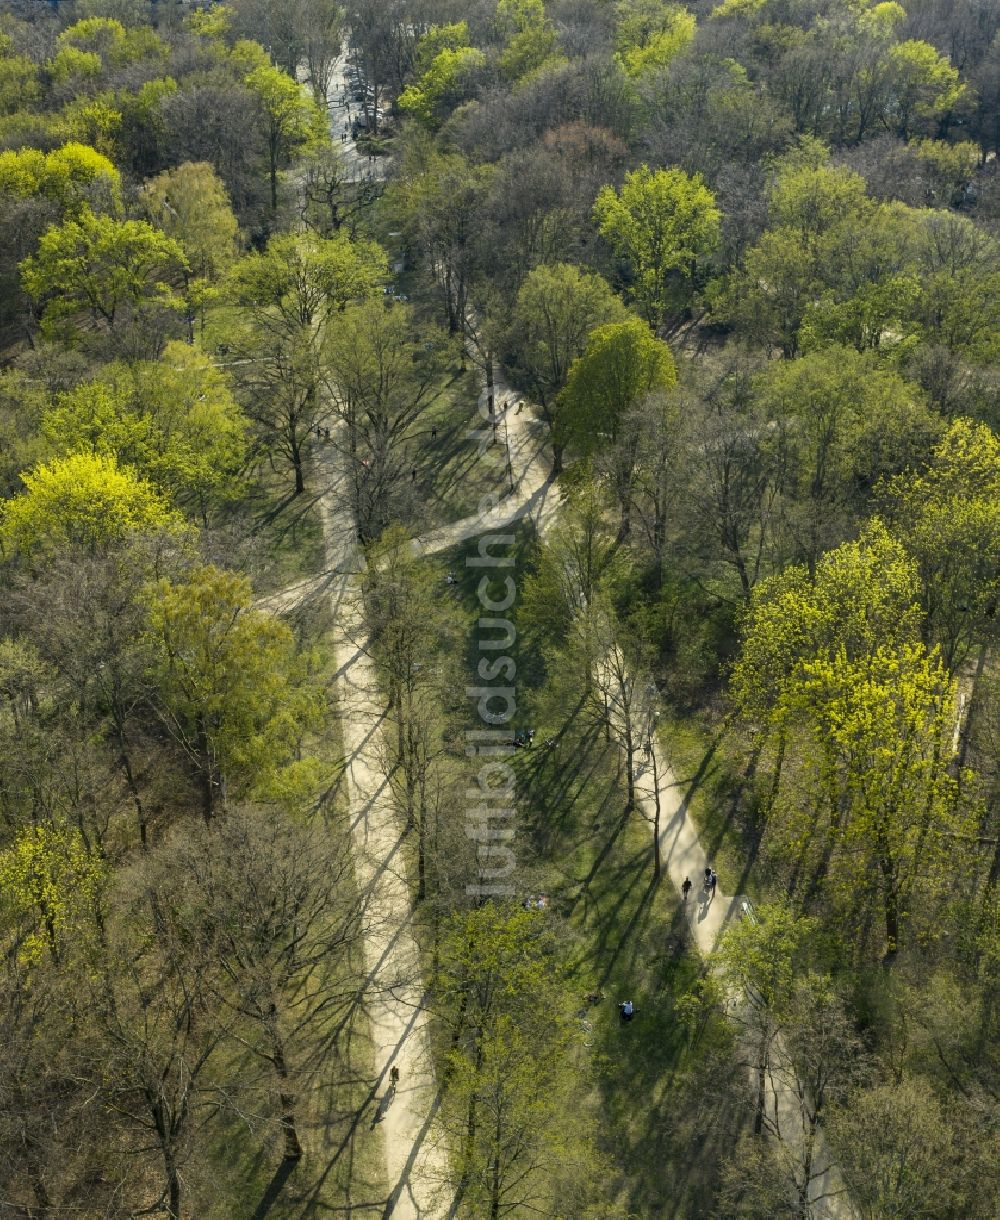 Luftaufnahme Berlin - Frischer grüner Blattaustrieb in einem Waldgebiet der Parkanlage im Ortsteil Tiergarten in Berlin, Deutschland